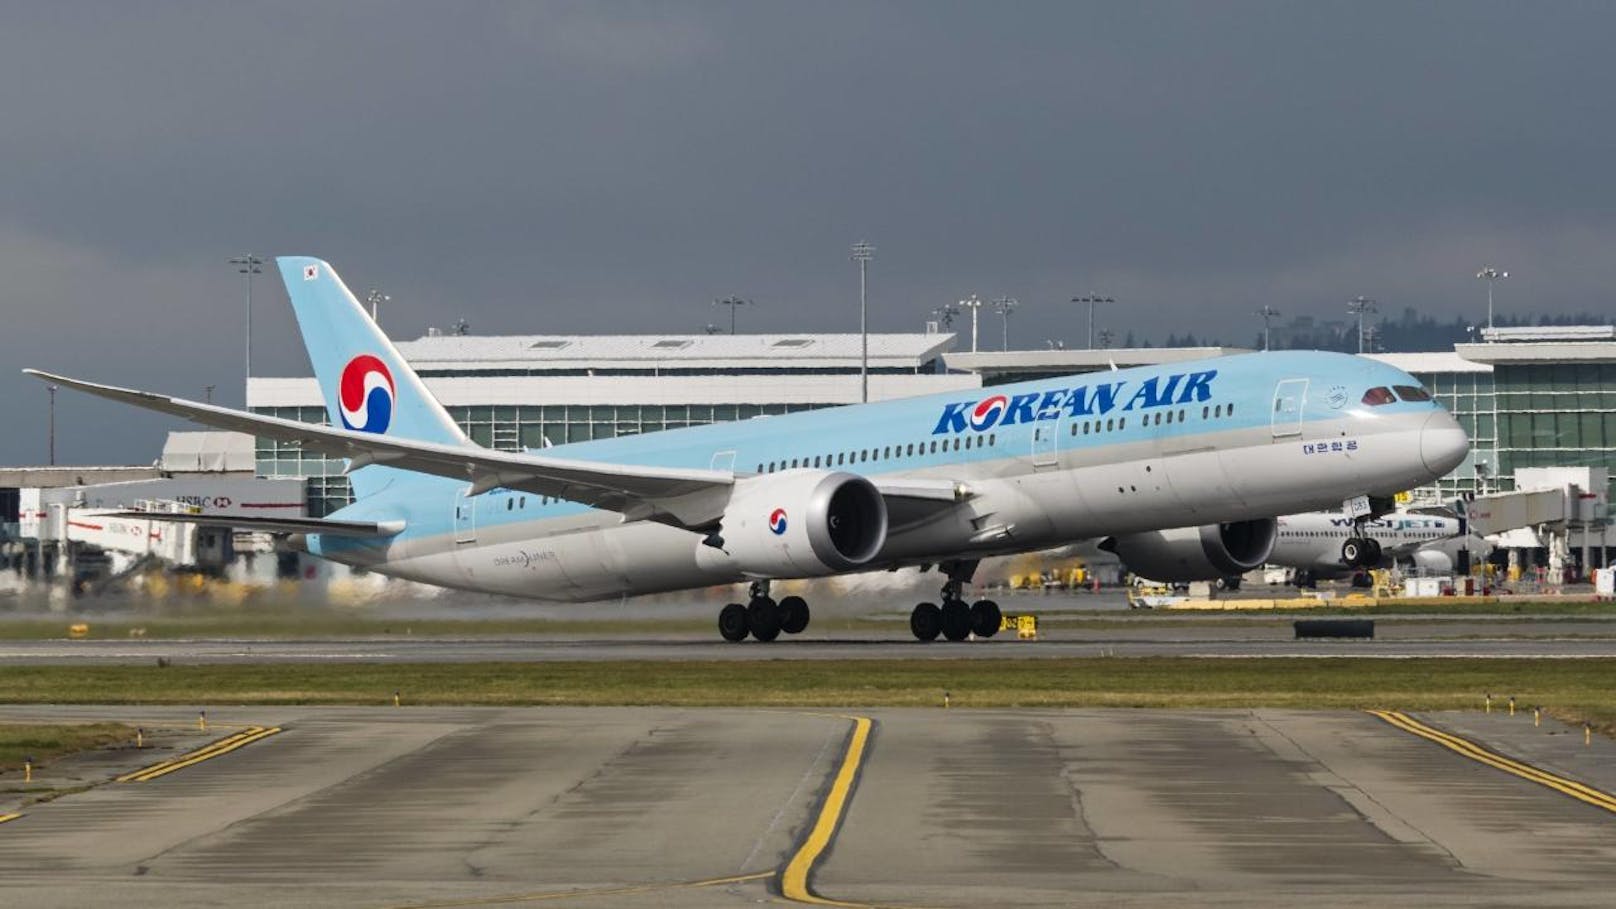 Das sind die beliebtesten Airlines der Welt:
<b>Platz 10: Korean Air, Südkorea </b>
Tripadvisor-Bewertung: "Normale Economy ist bei Korean Air im Vergleich zu anderen Fluggesellschaften (vor allem amerikanischen) eher Economy Plus. Die Flugbegleiter waren großartig."